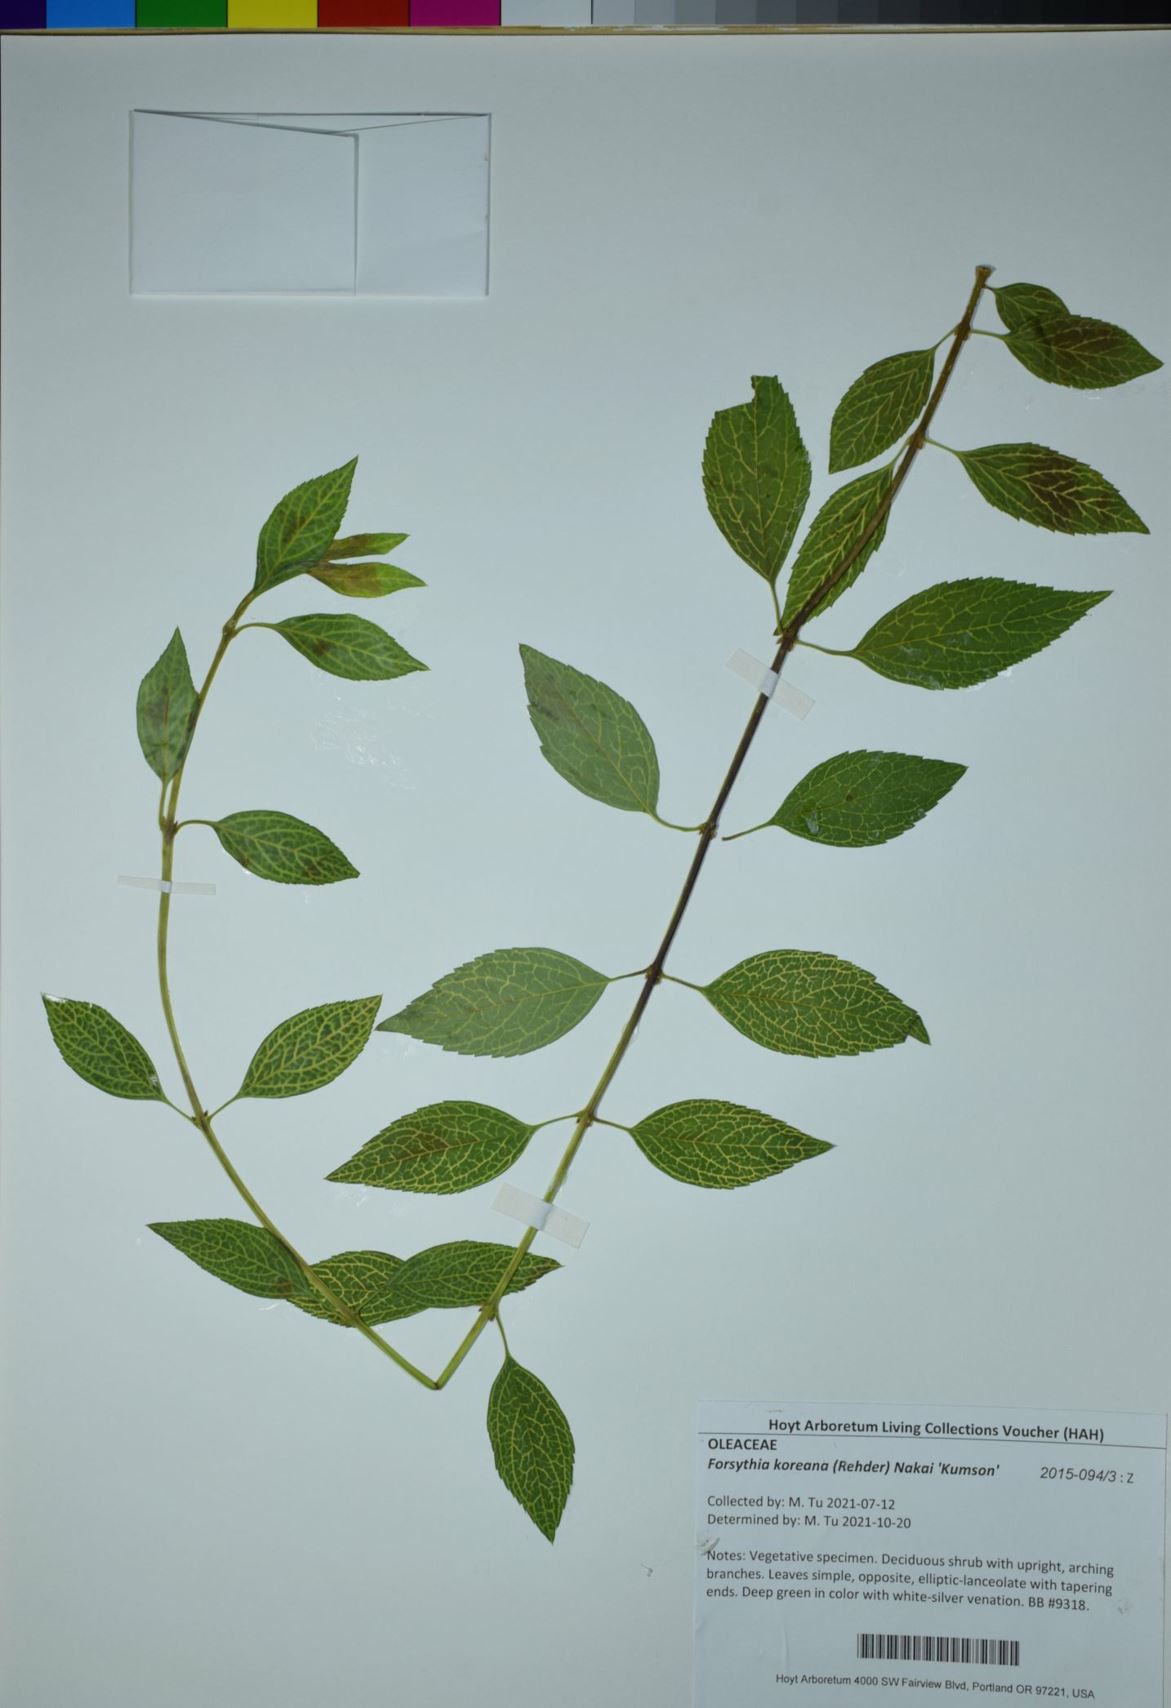 Forsythia koreana 'Kumson' - greenstem forsythia, greenstem forsythia, Korean forsythia